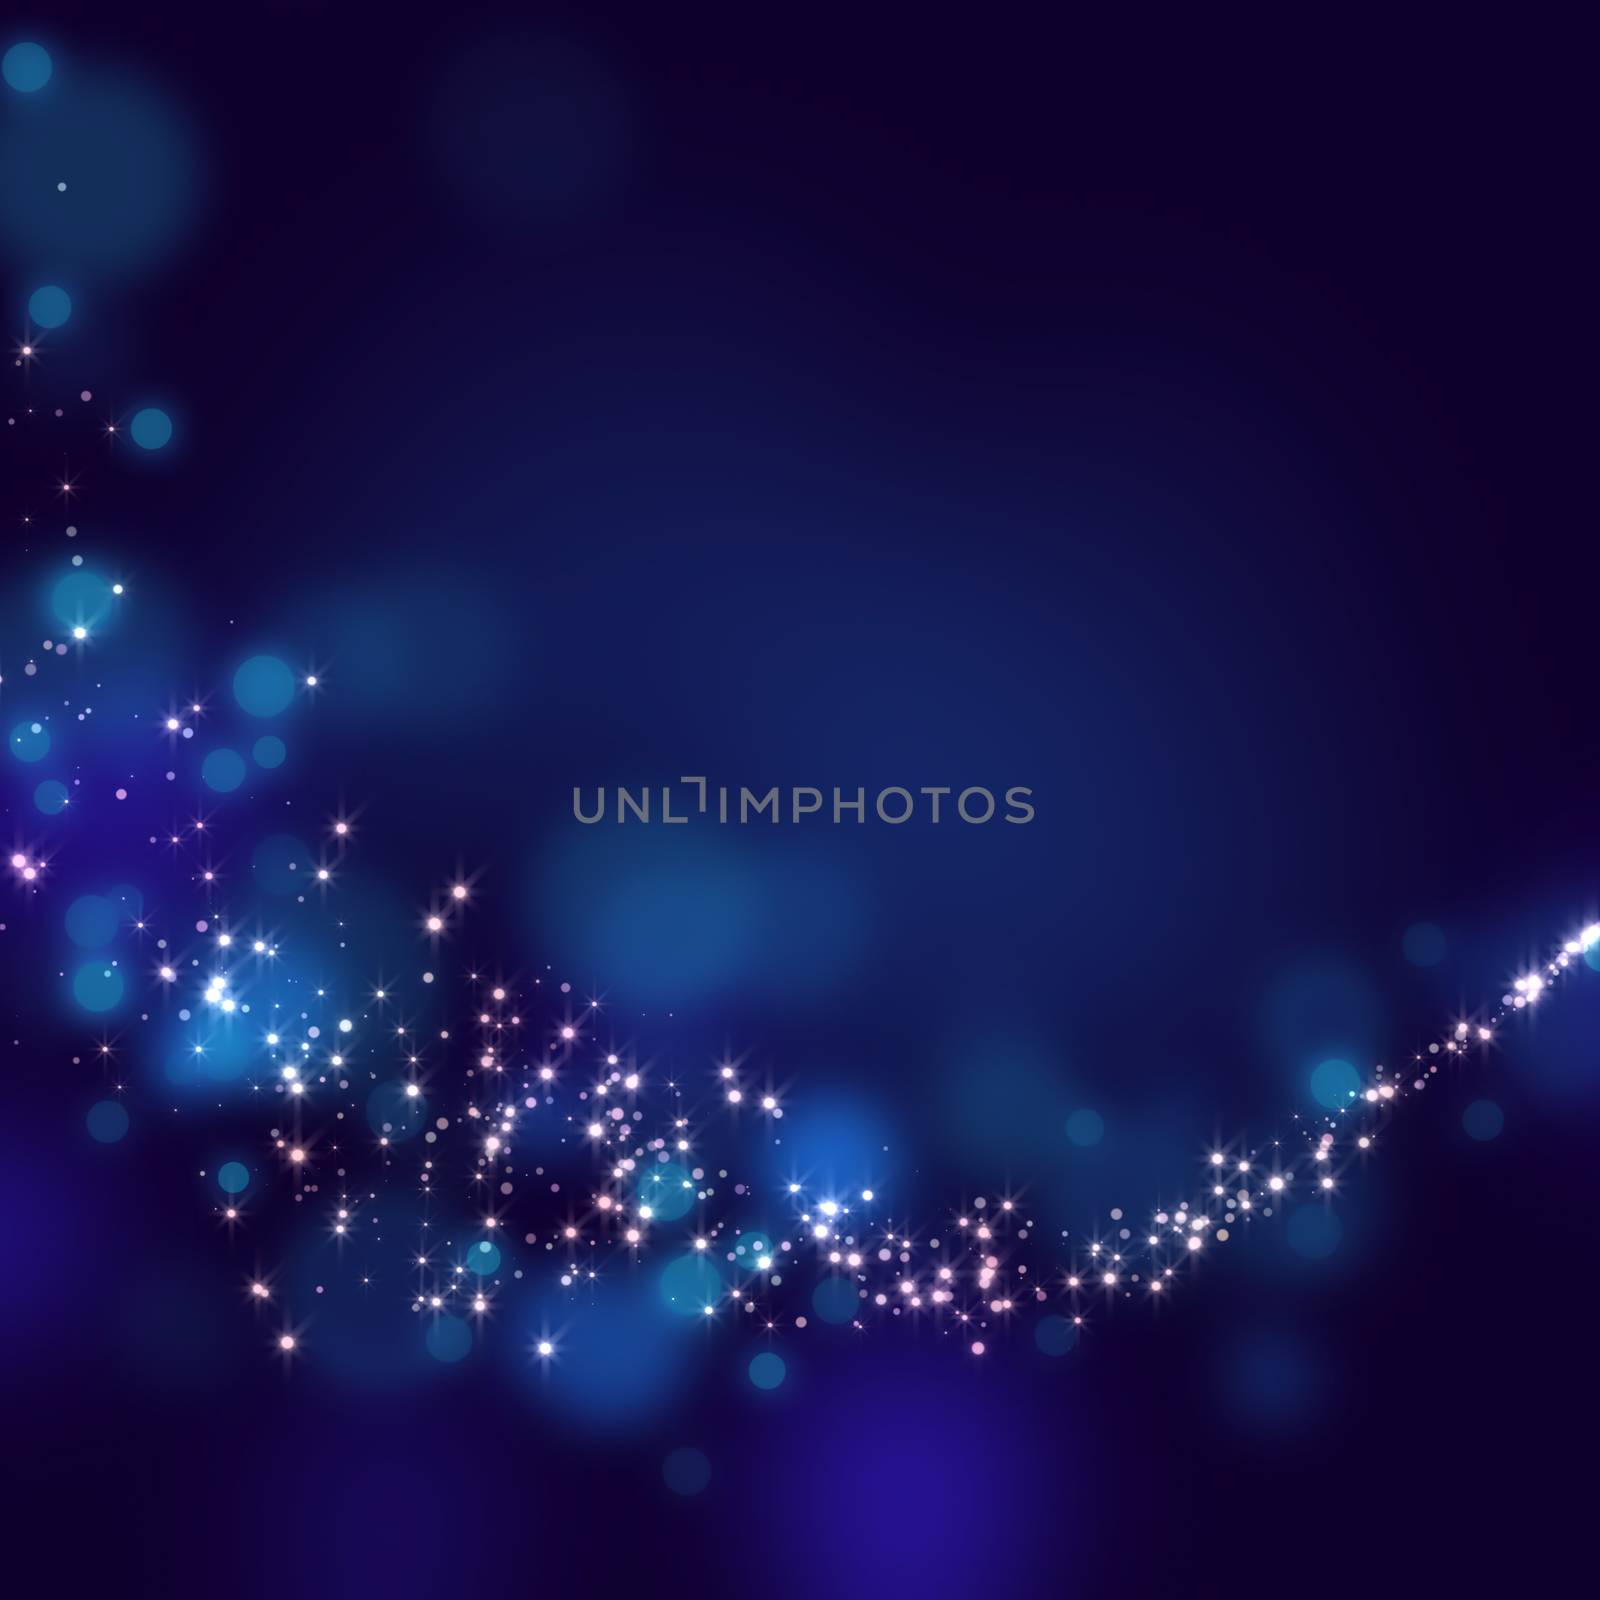 glittering stars on bokeh background by kaisorn